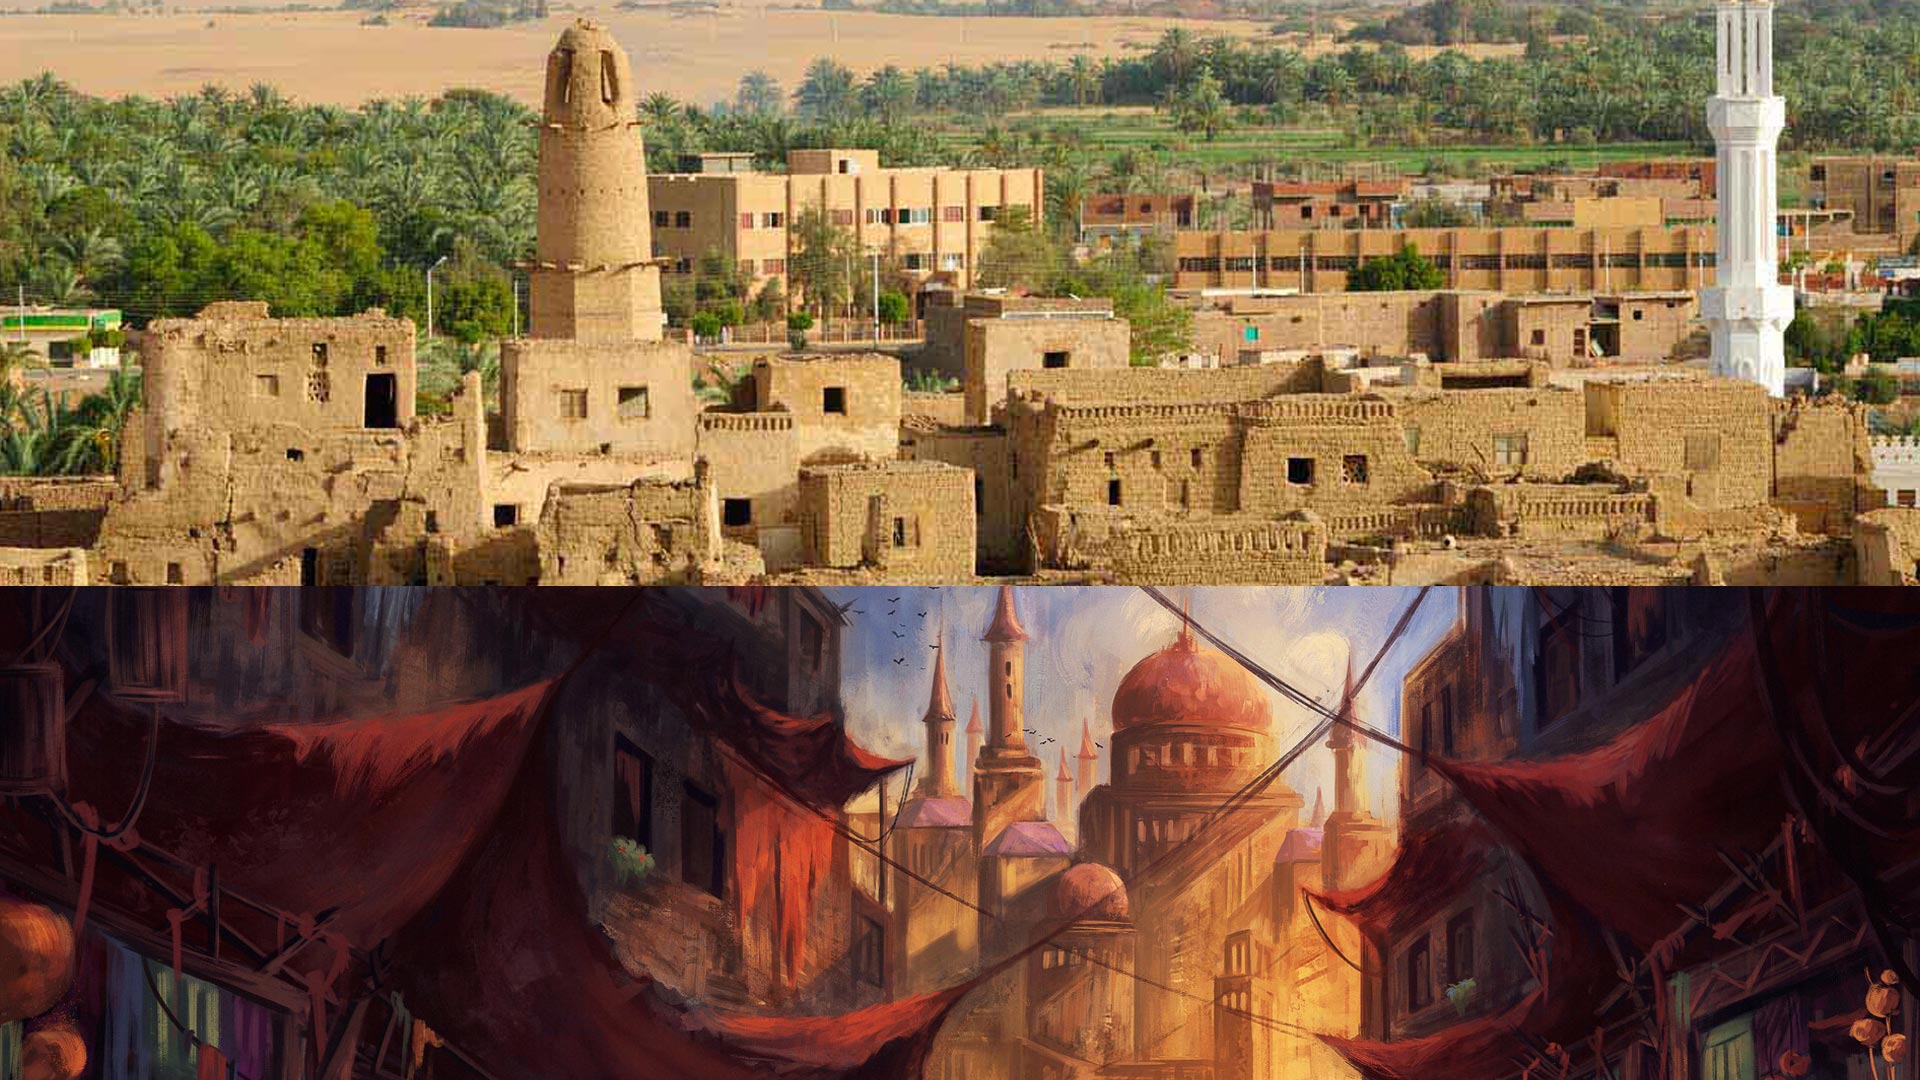 چشم انداز پادشاهی آلاباستای وان پیس با چشم انداز مناطق روستایی مصر